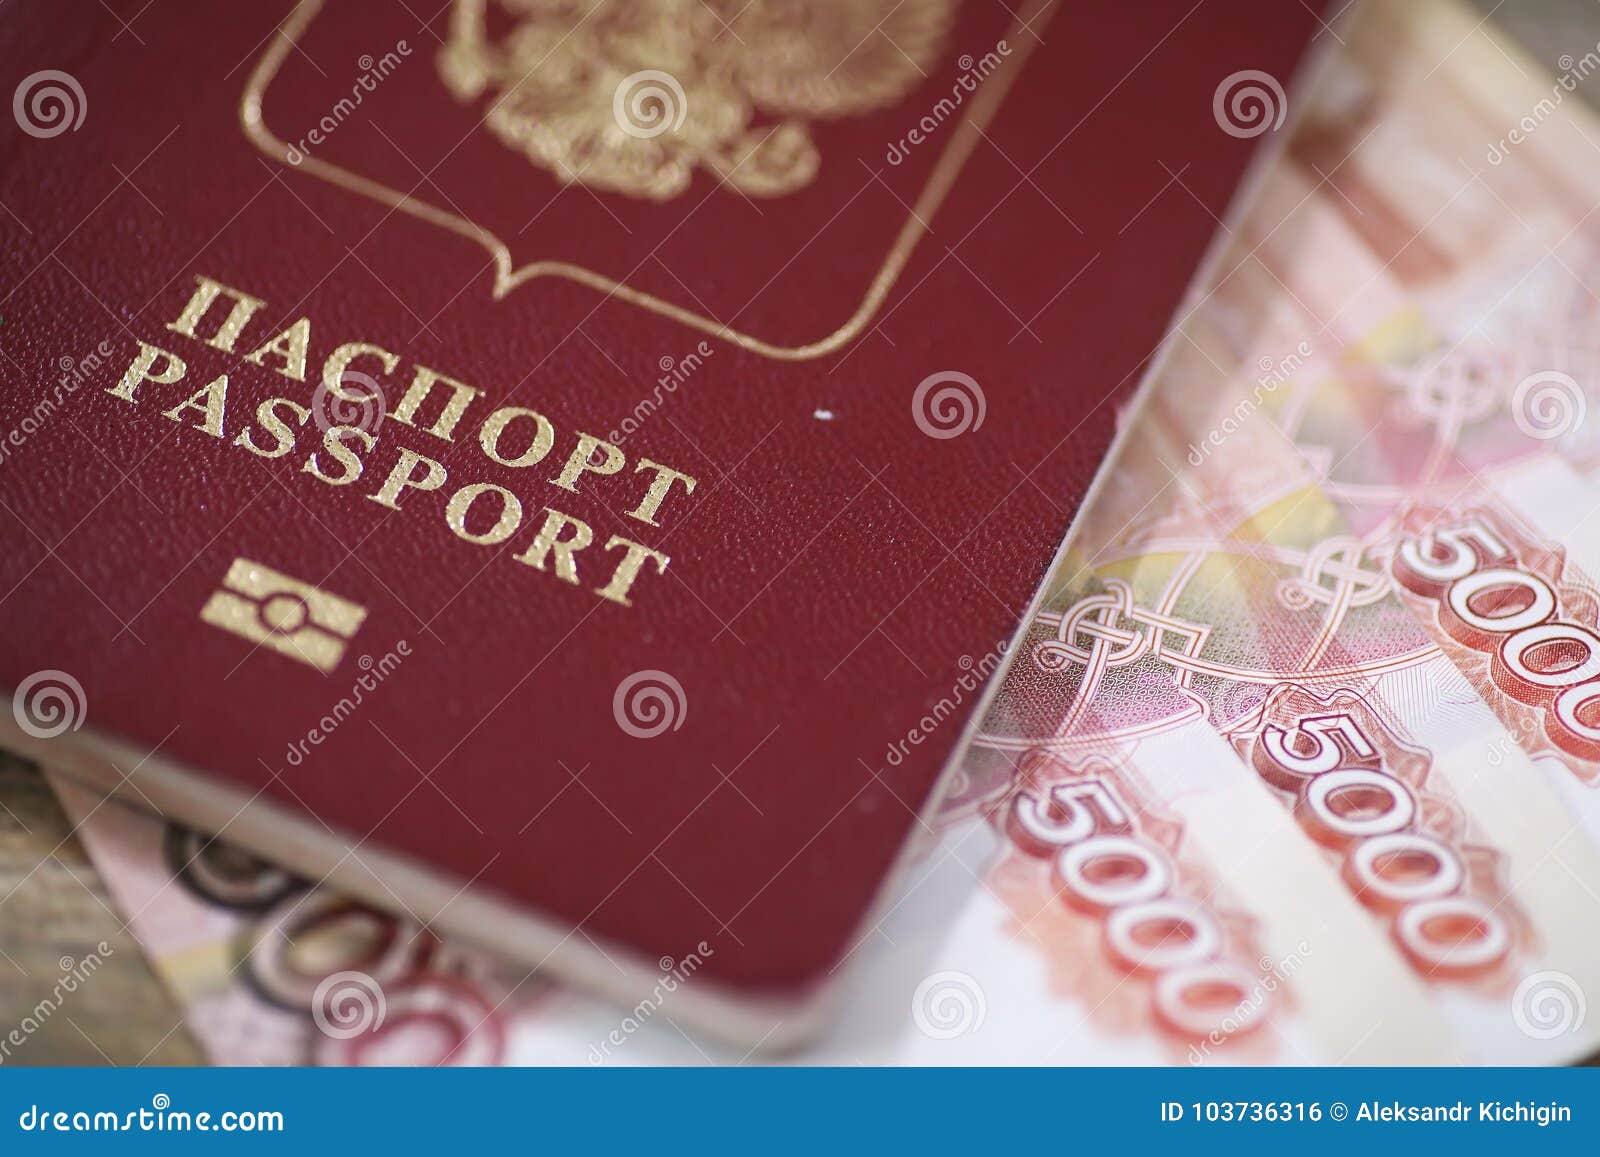 Микрозайм по паспорту в Барнауле на неделю